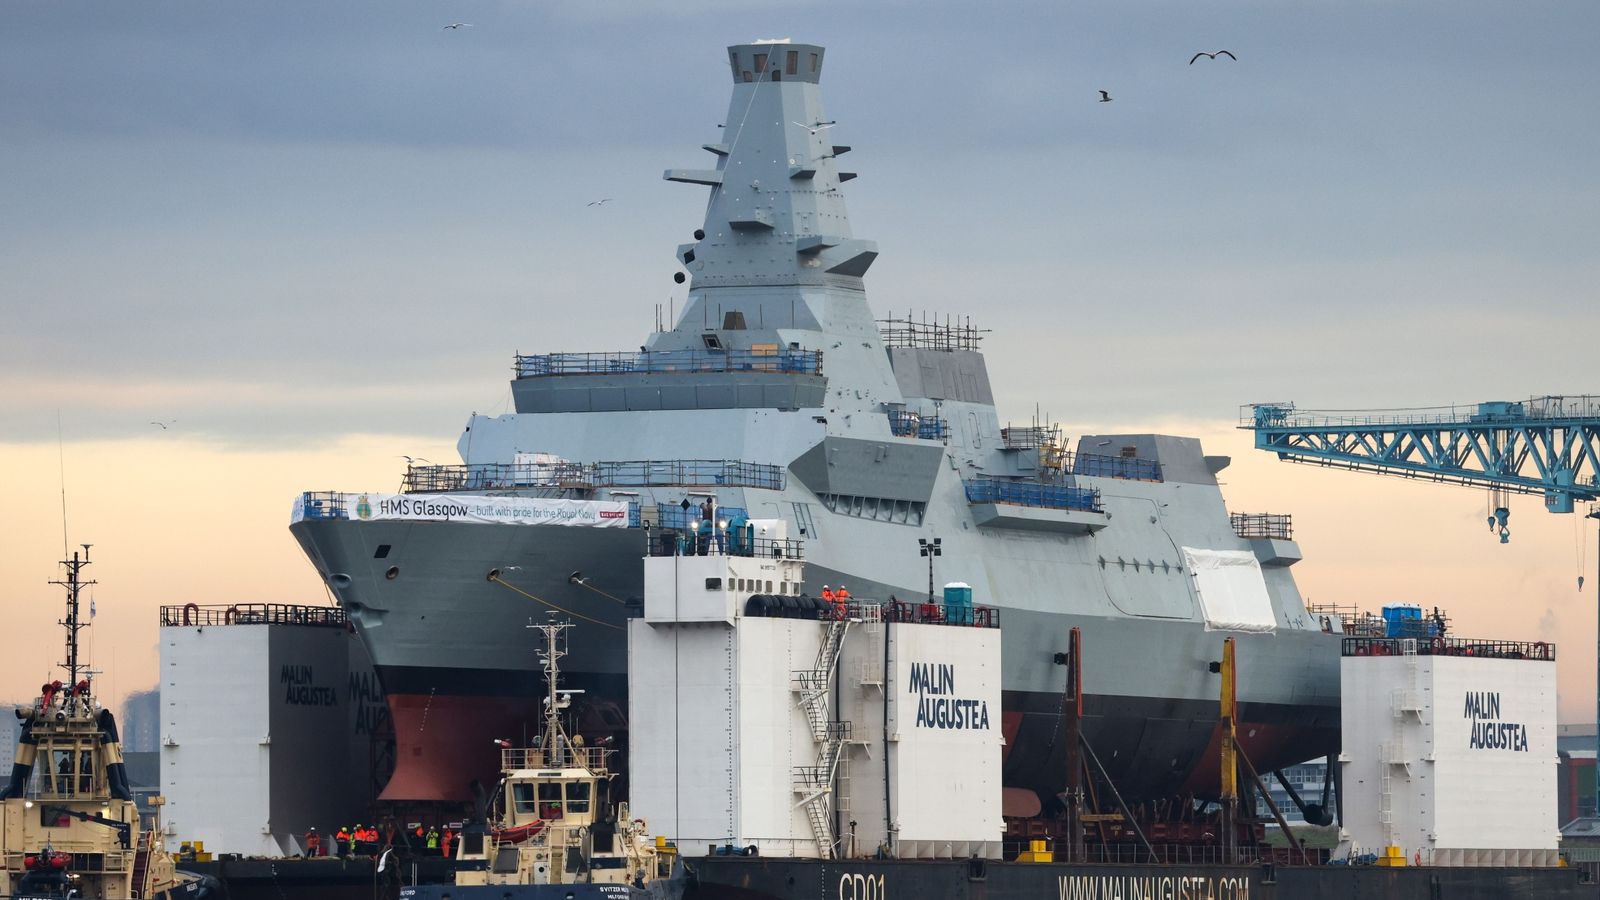 Sabotage investigation after cables damaged on Royal Navy warship HMS Glasgow at Scottish shipyard